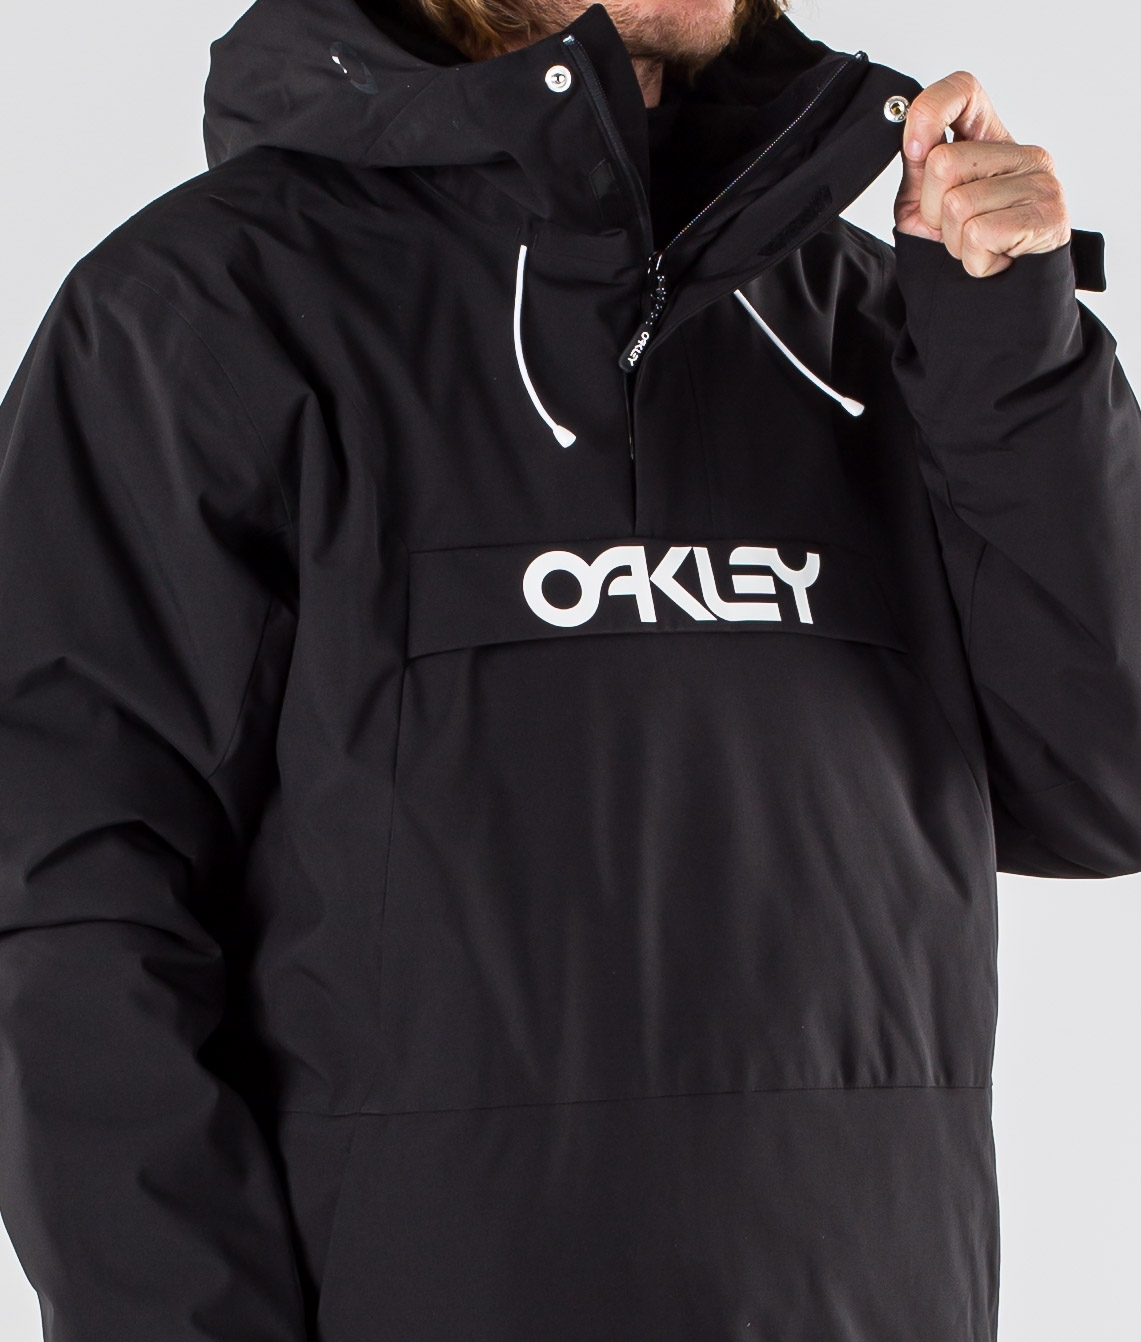 oakley ski coat